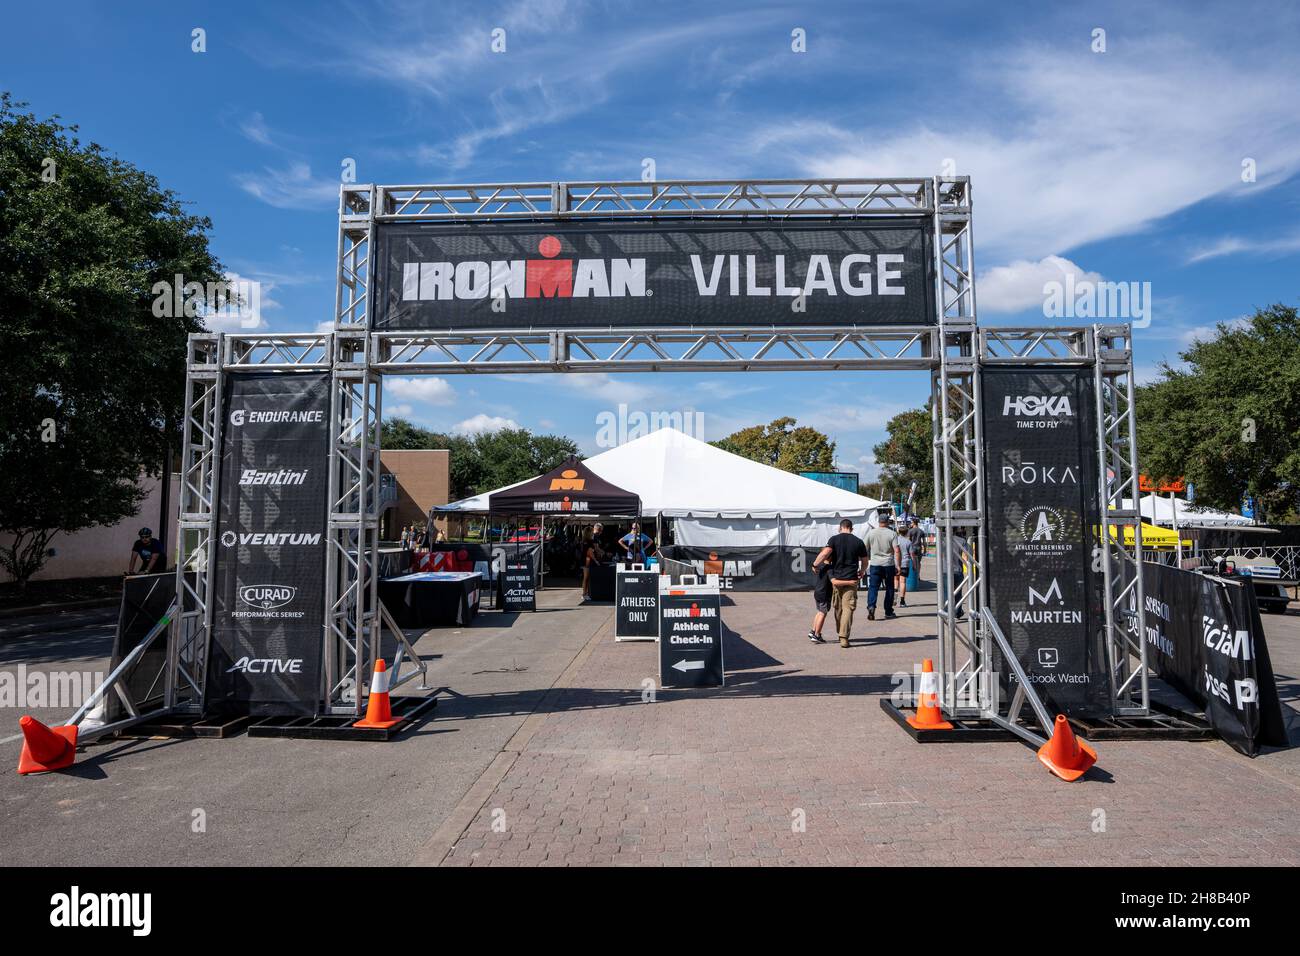 Waco, Texas - 21. Oktober 2021: IRONMAN Village Check-in-Bereich für die erste Ironman Waco Veranstaltung am 23. Und 24. Oktober. Stockfoto